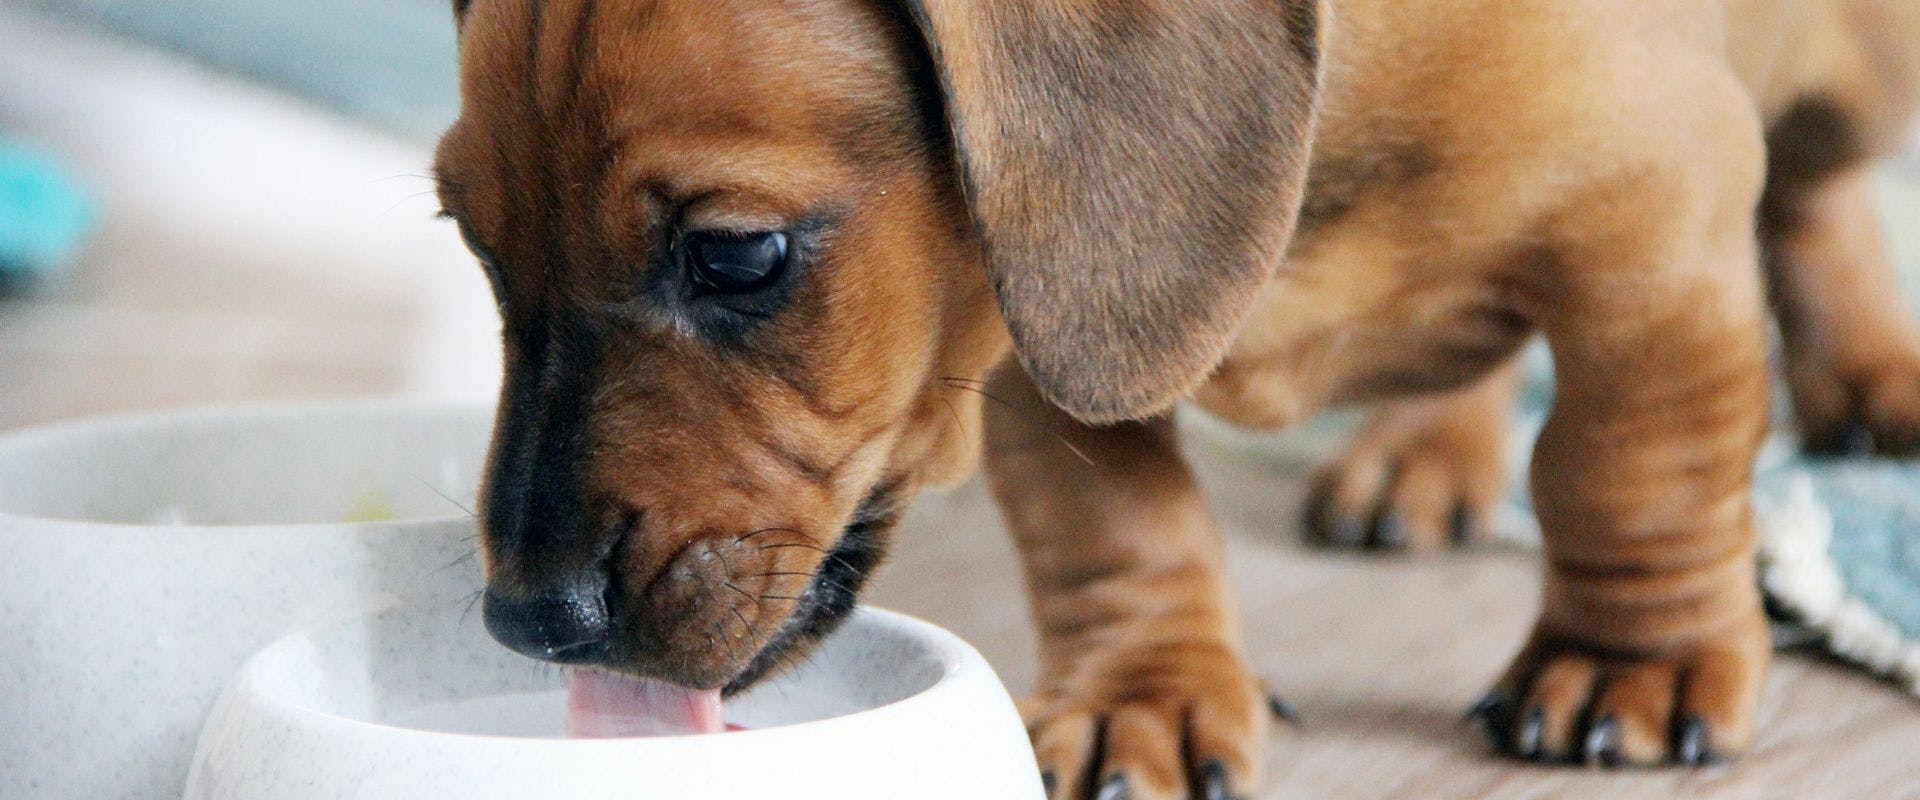 Puppy drinking milk